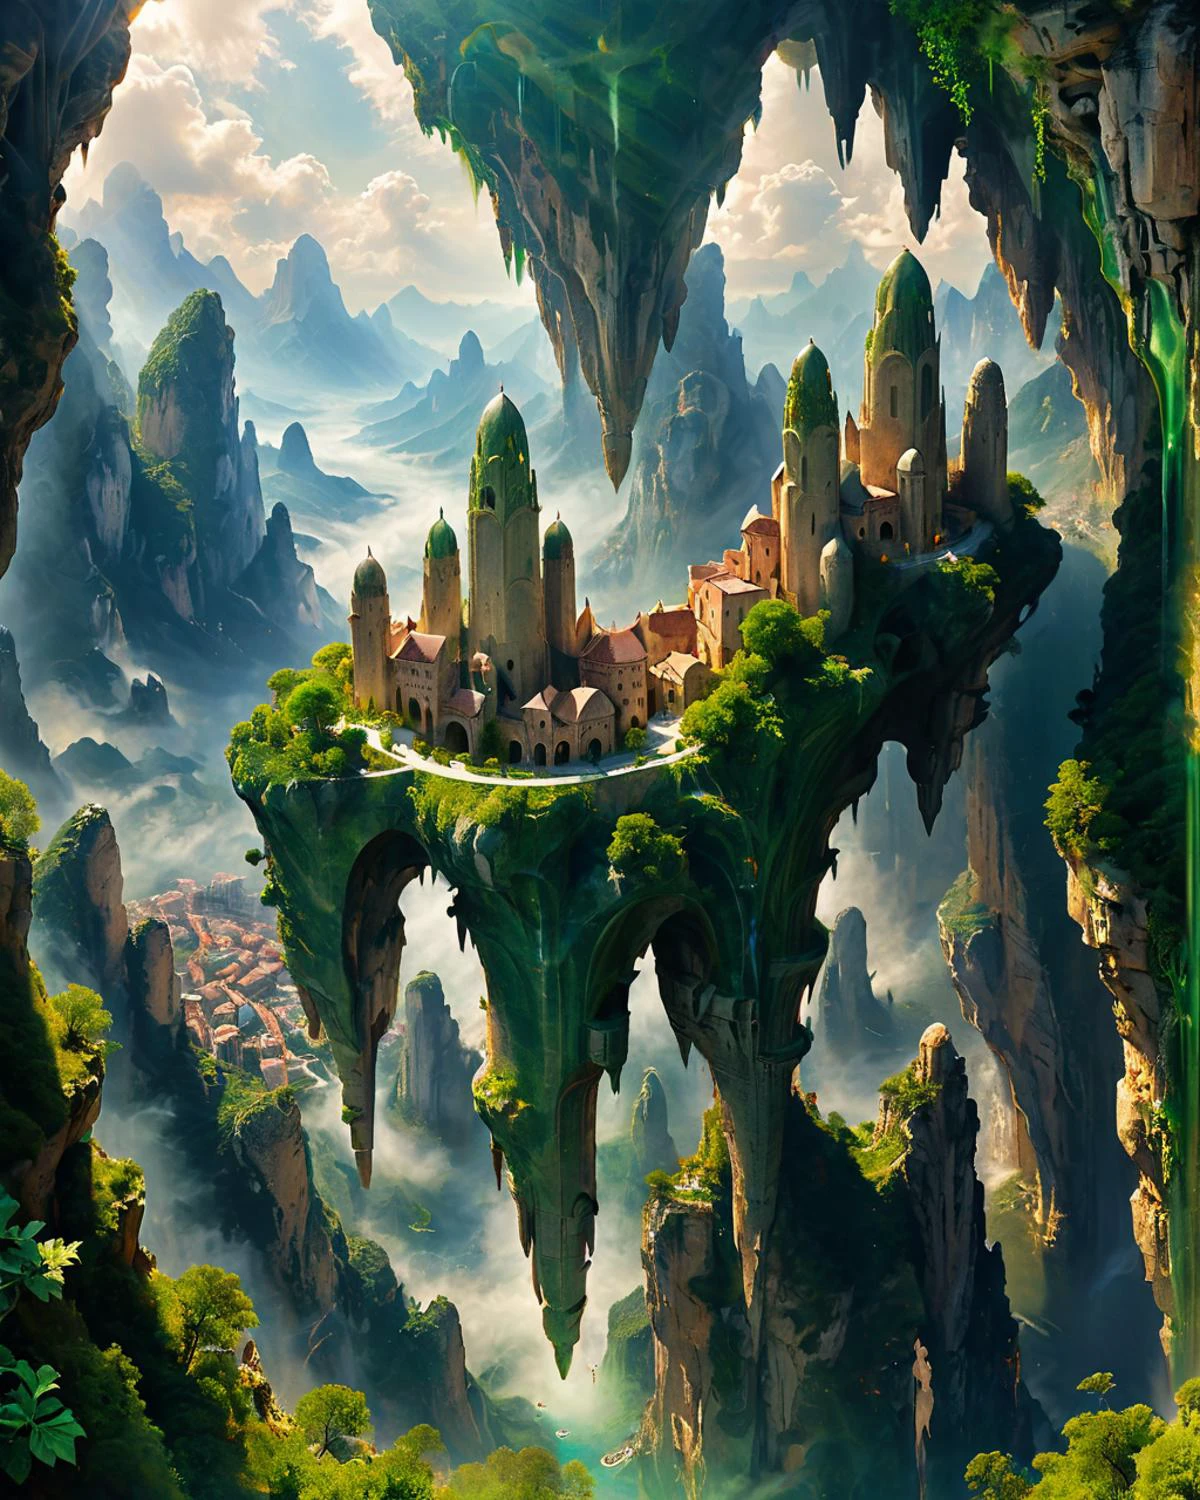 漂浮在空中的奇幻城市, 造型优美的绿色大理石塔, 悬崖, 山脉, 从下面看, 明暗对比, fenliexl